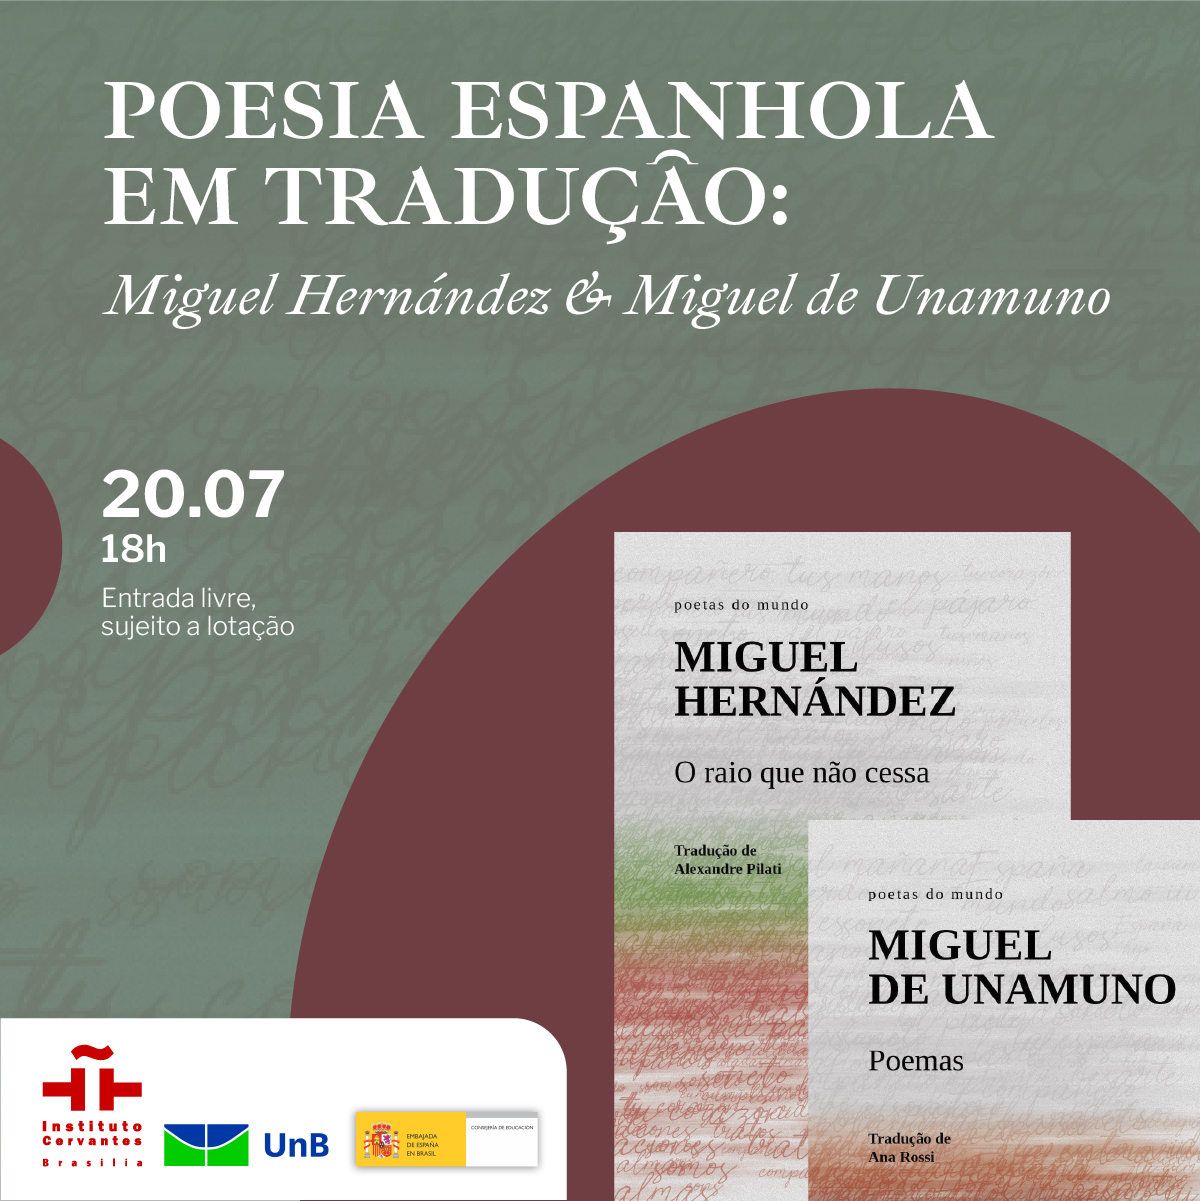 Lançamento de livros - Poesia espanhola em tradução